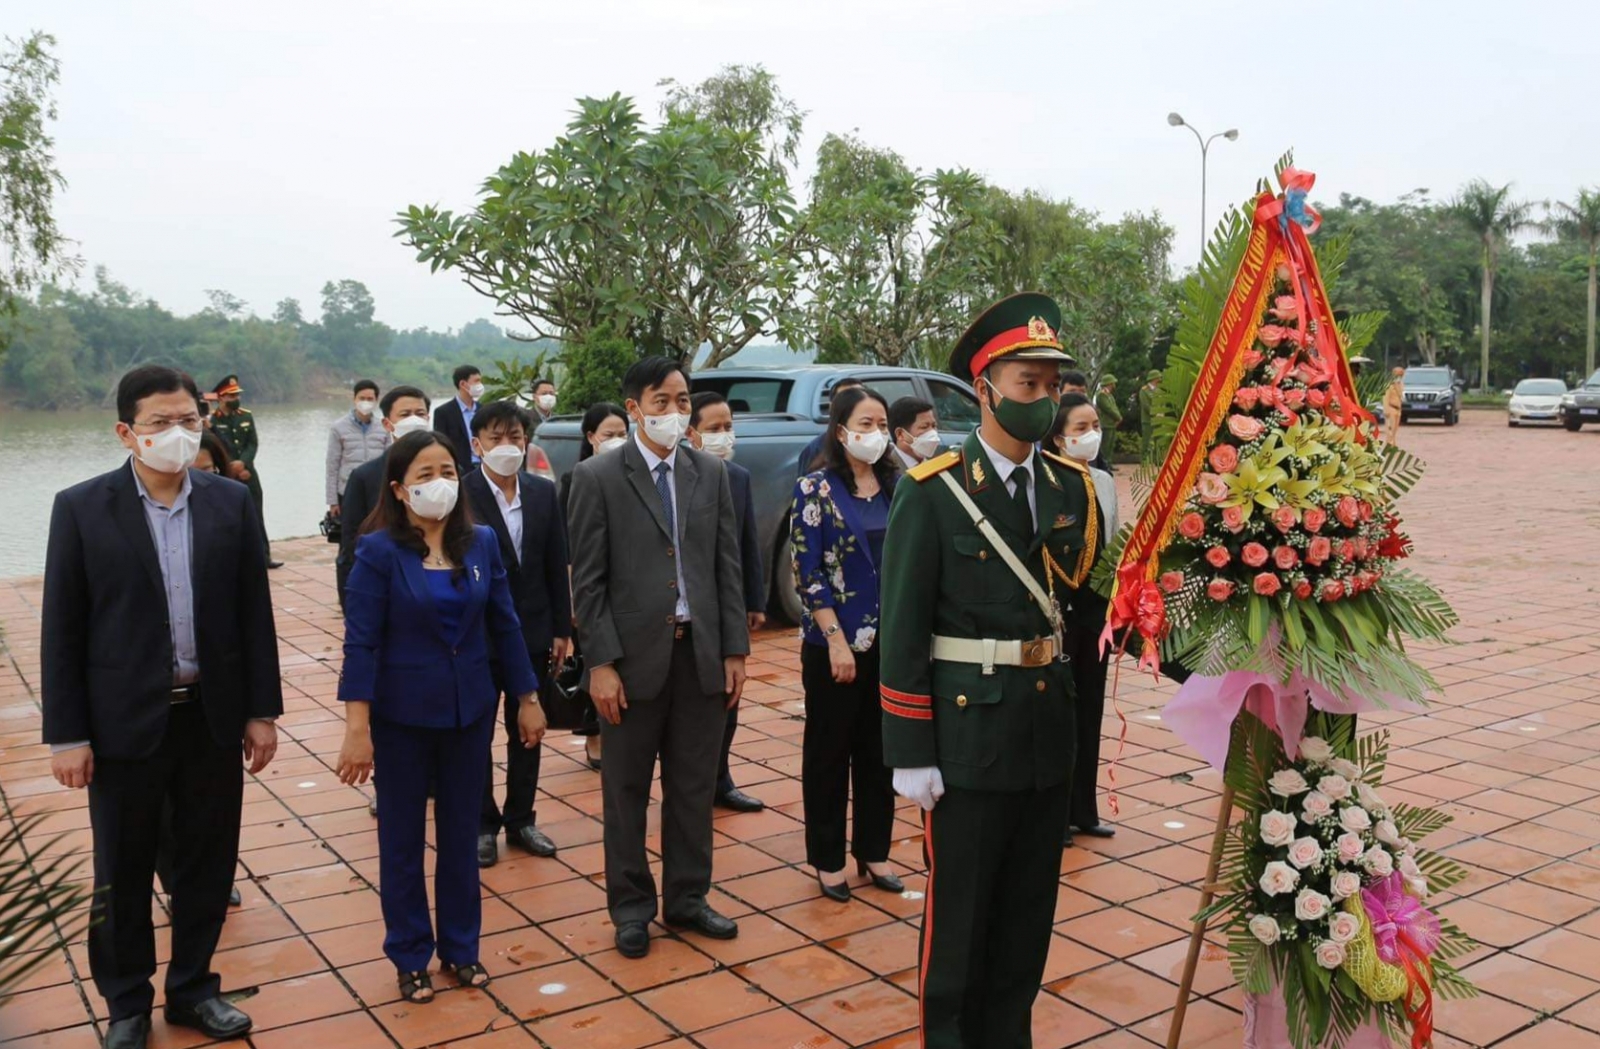 Phó Chủ tịch nước thăm ngôi trường lá cờ đầu cấp Trung học cơ sở tại Quảng Trị - Ảnh minh hoạ 4